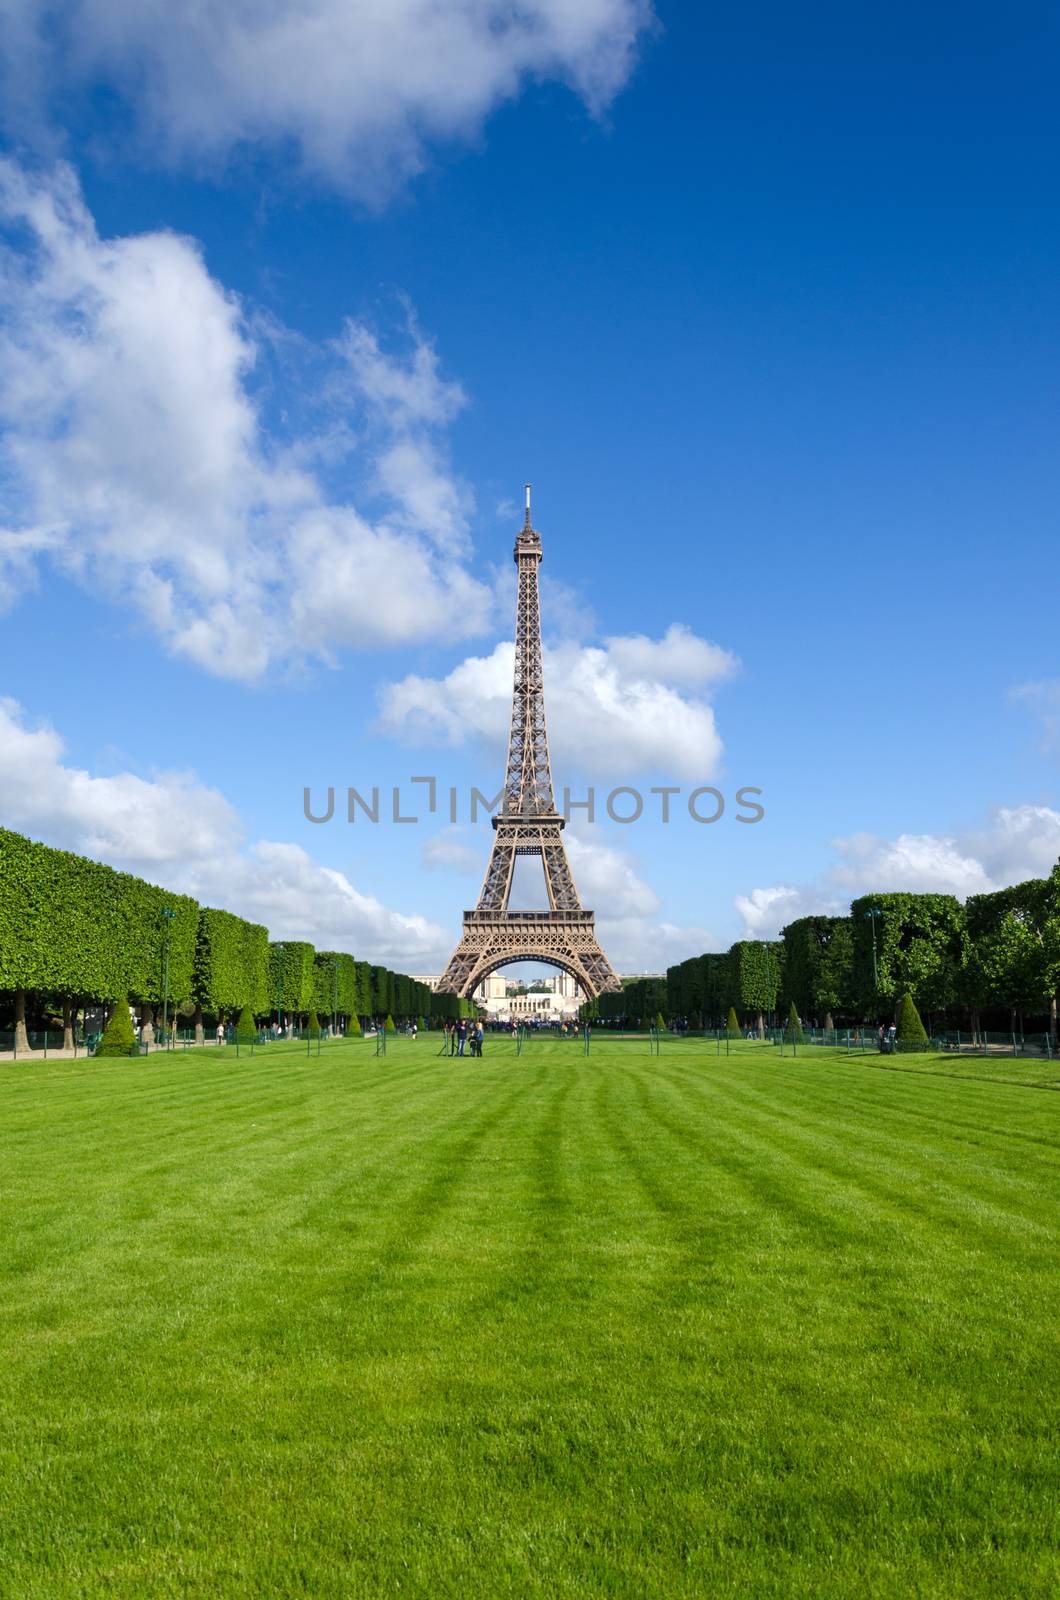 Eiffel Tower with garden in Paris, France.